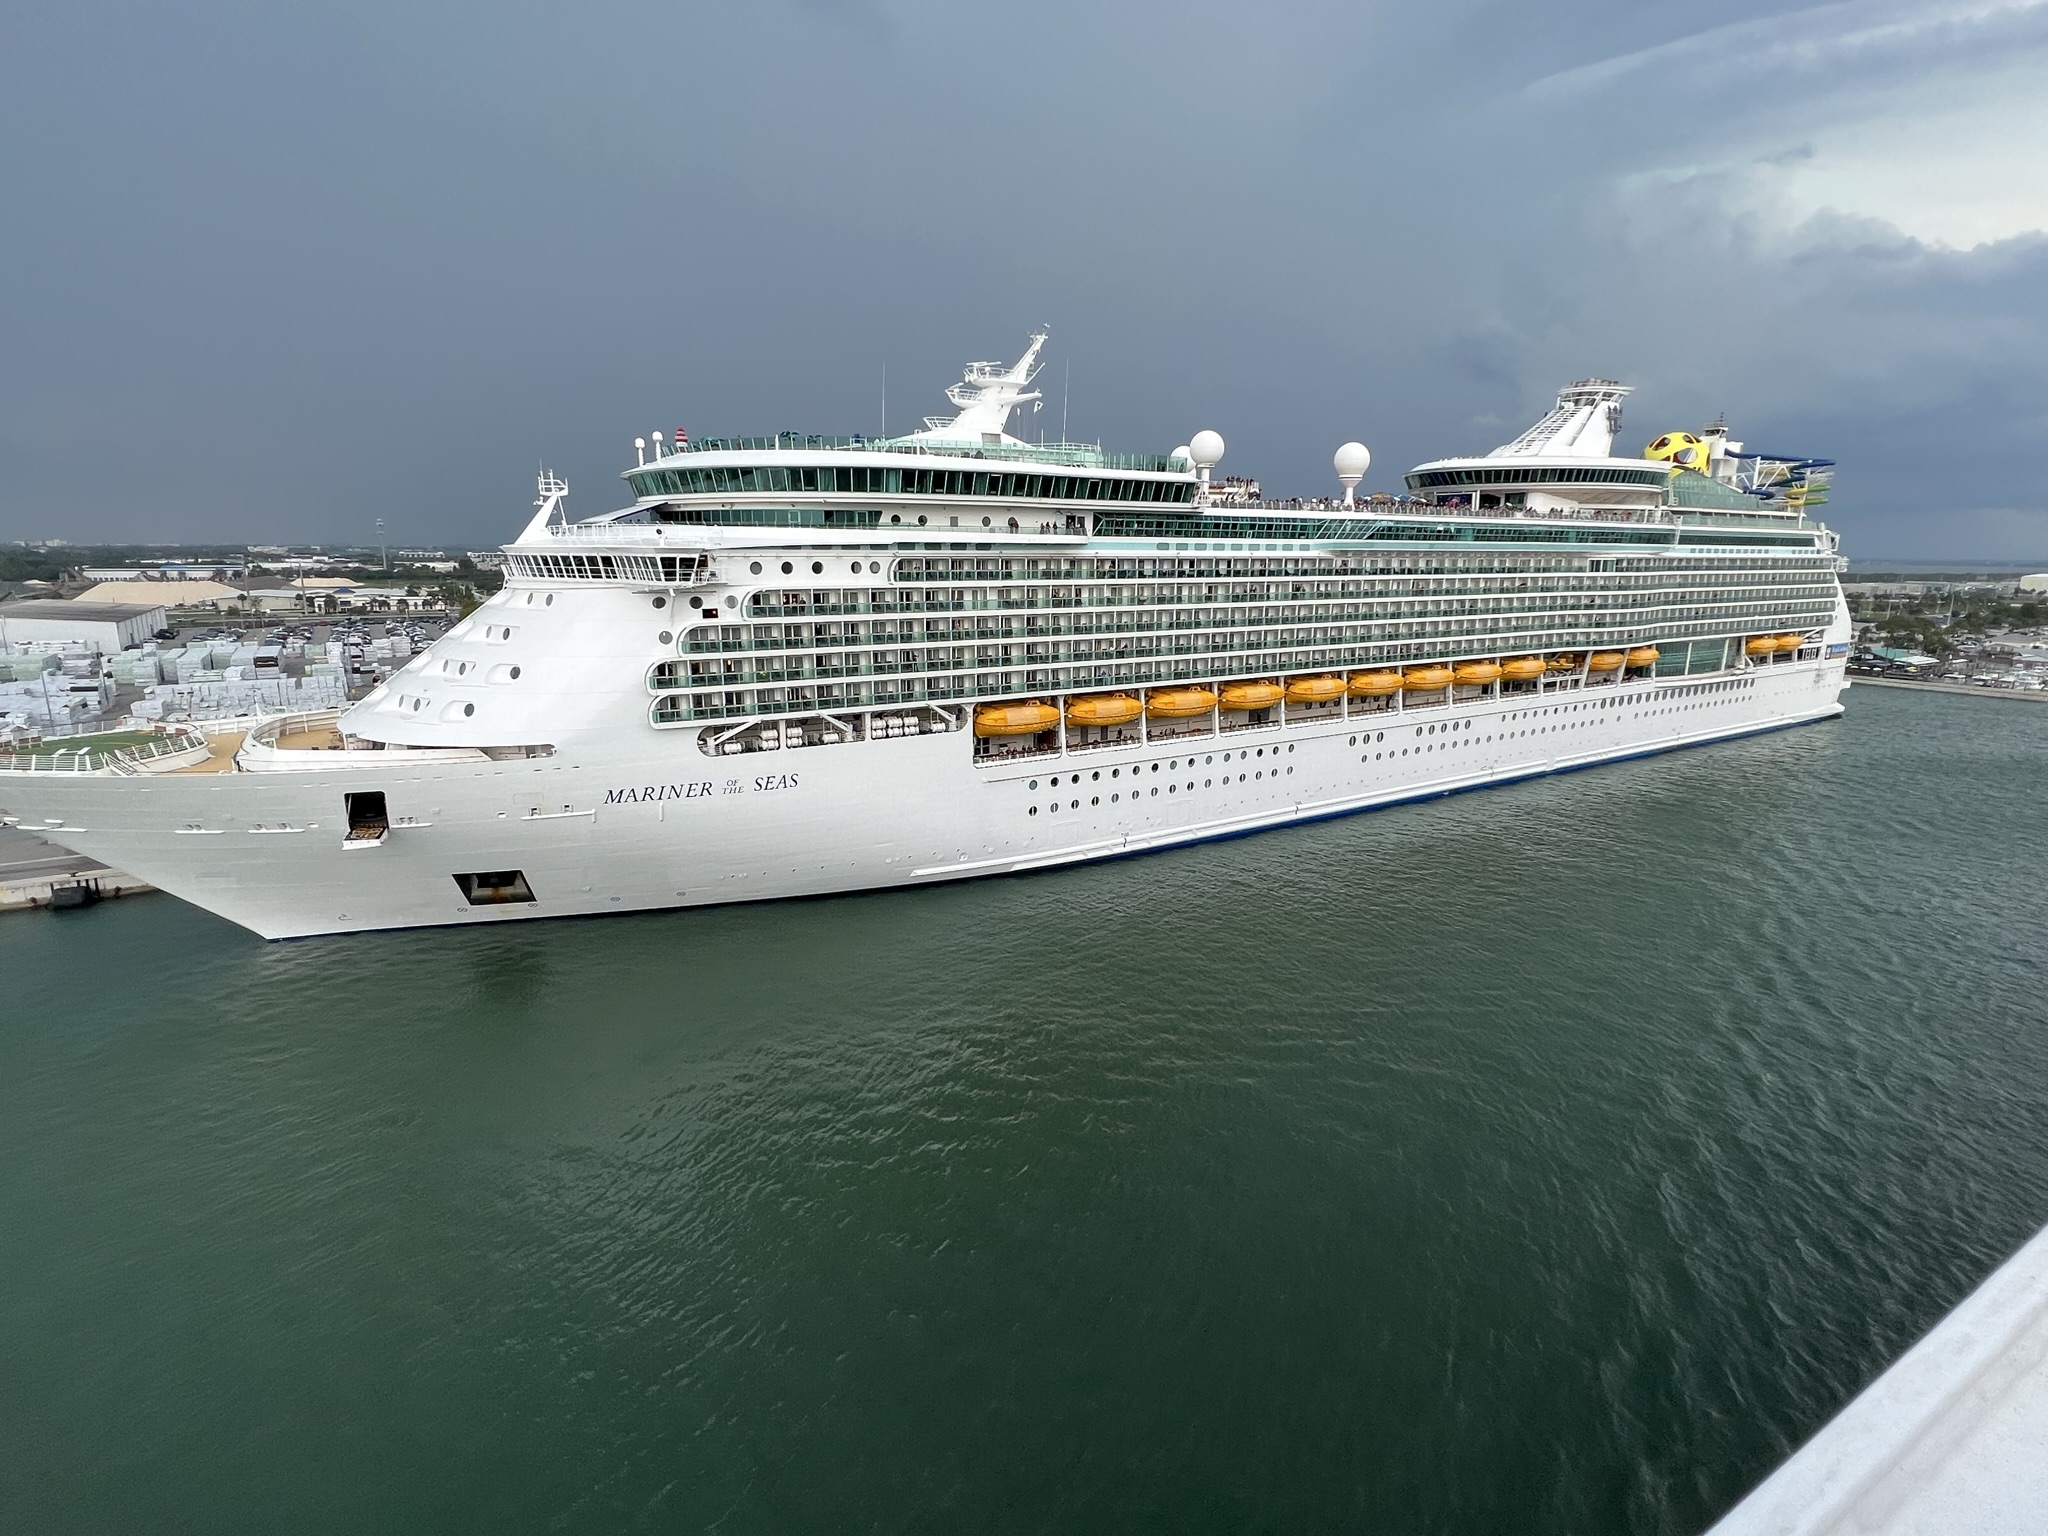 Cruise Ship Shorts – Royal Caribbean’s Mariner of the Seas Cruise Ship Docked at Port of Canaveral